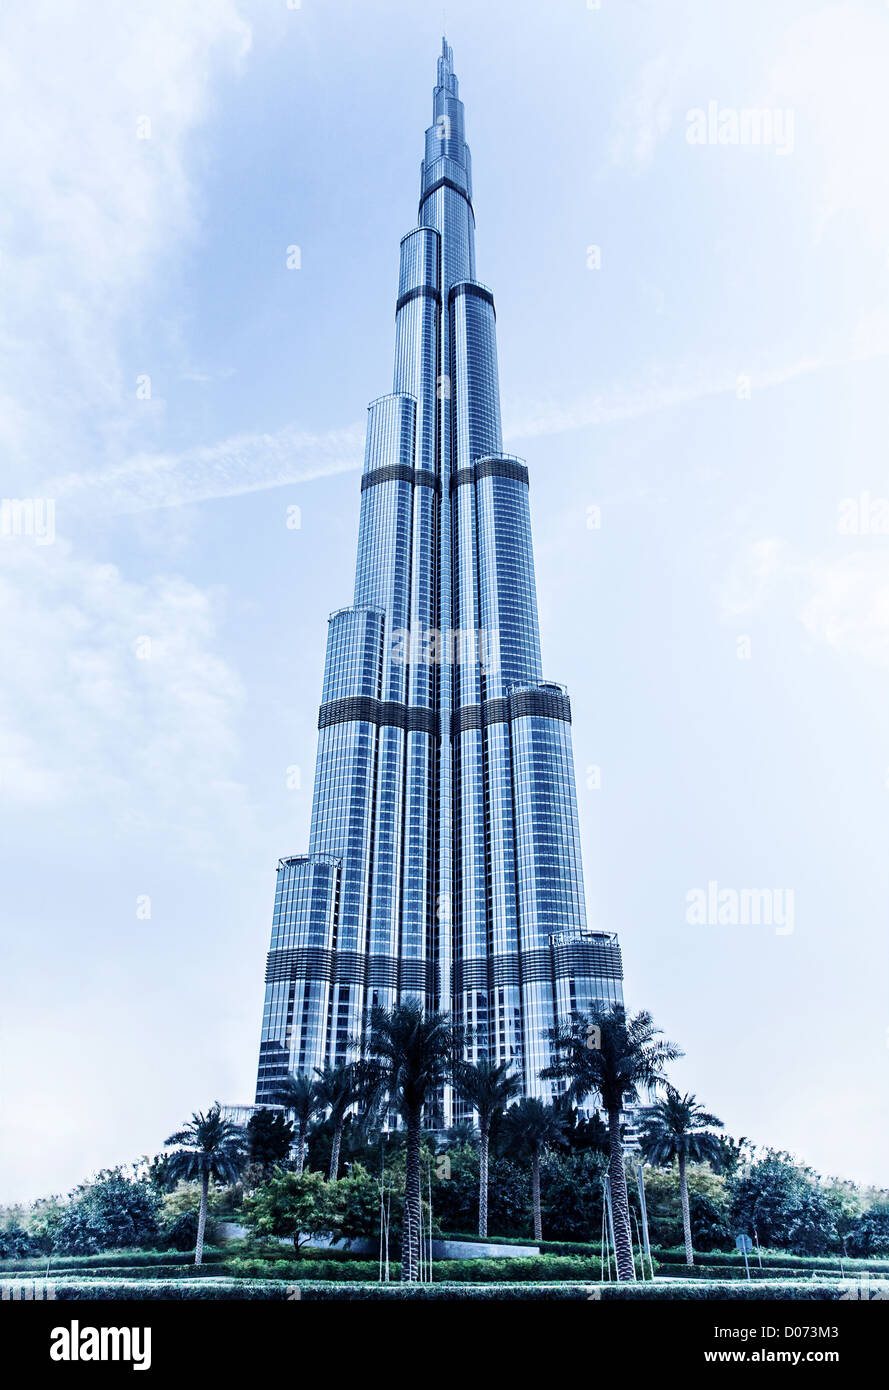 DUBAI, Emirati Arabi Uniti - 16 febbraio: Burj Khalifa - più alte del mondo torre al mondo a 828m, che si trova nel centro cittadino di Dubai e Burj Dubai Foto Stock